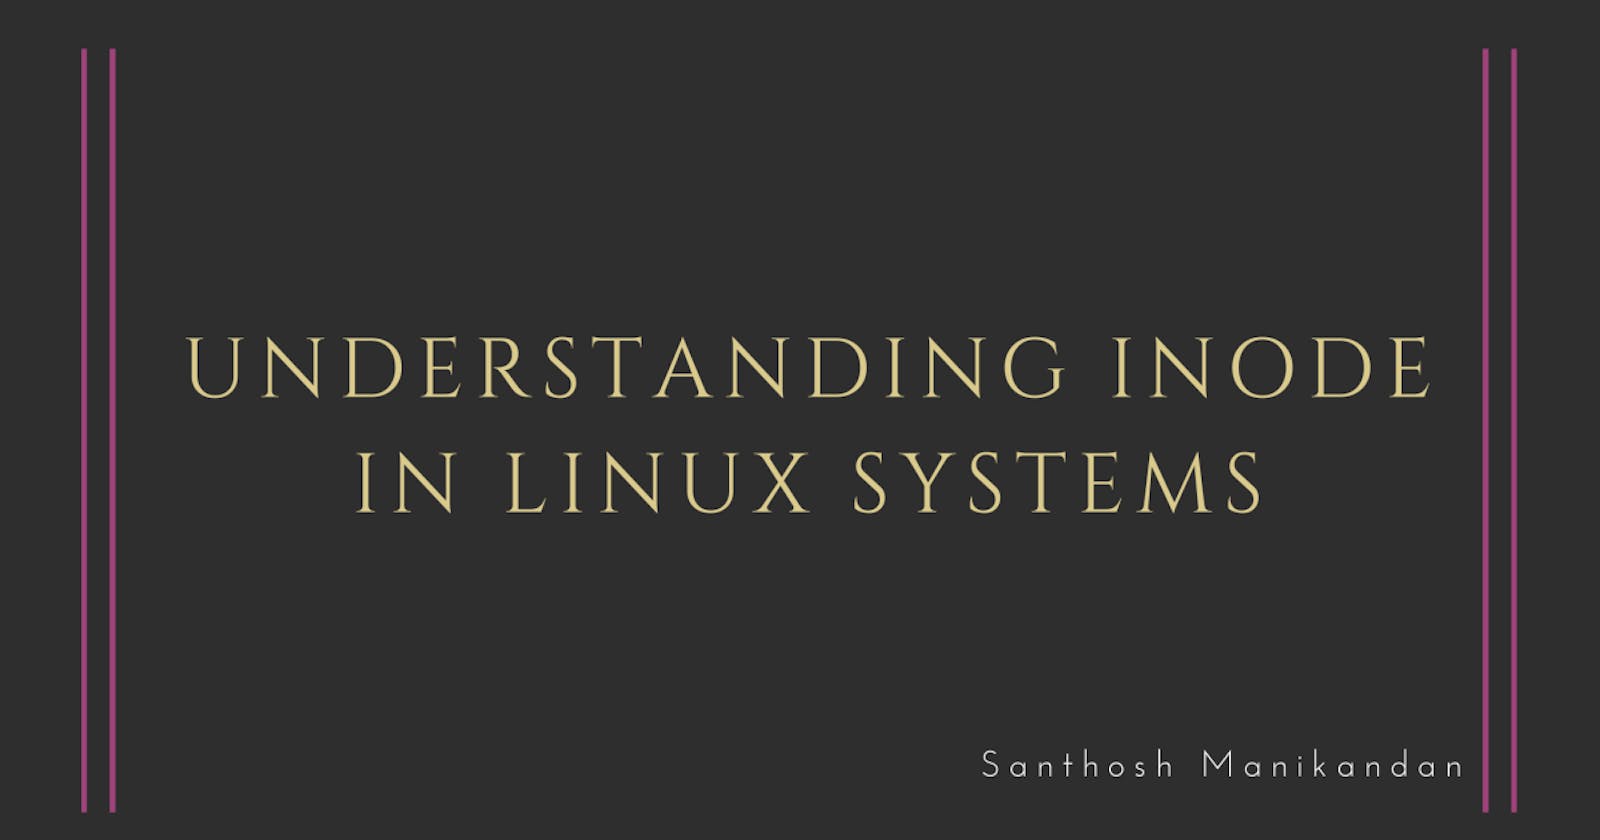 Understanding inode in Linux systems